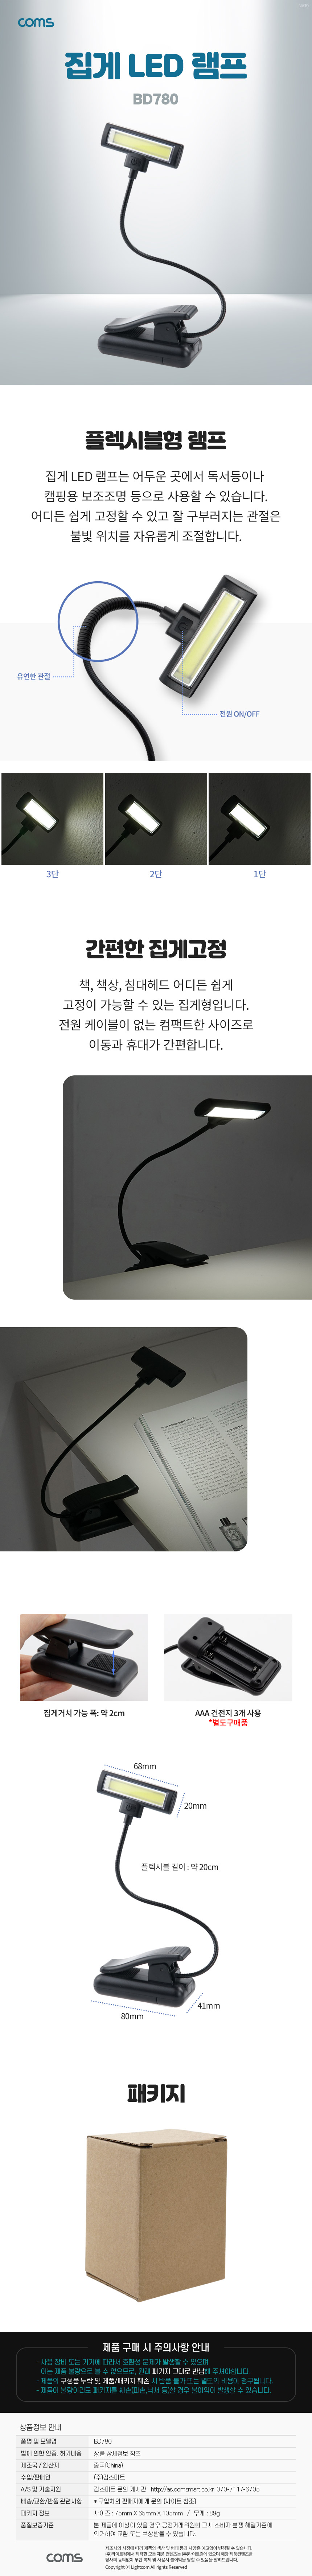 집게형 LED 램프 클립 조명 휴대용 독서등 학습 탁상용 조명 플렉시블 Flexible 자바라